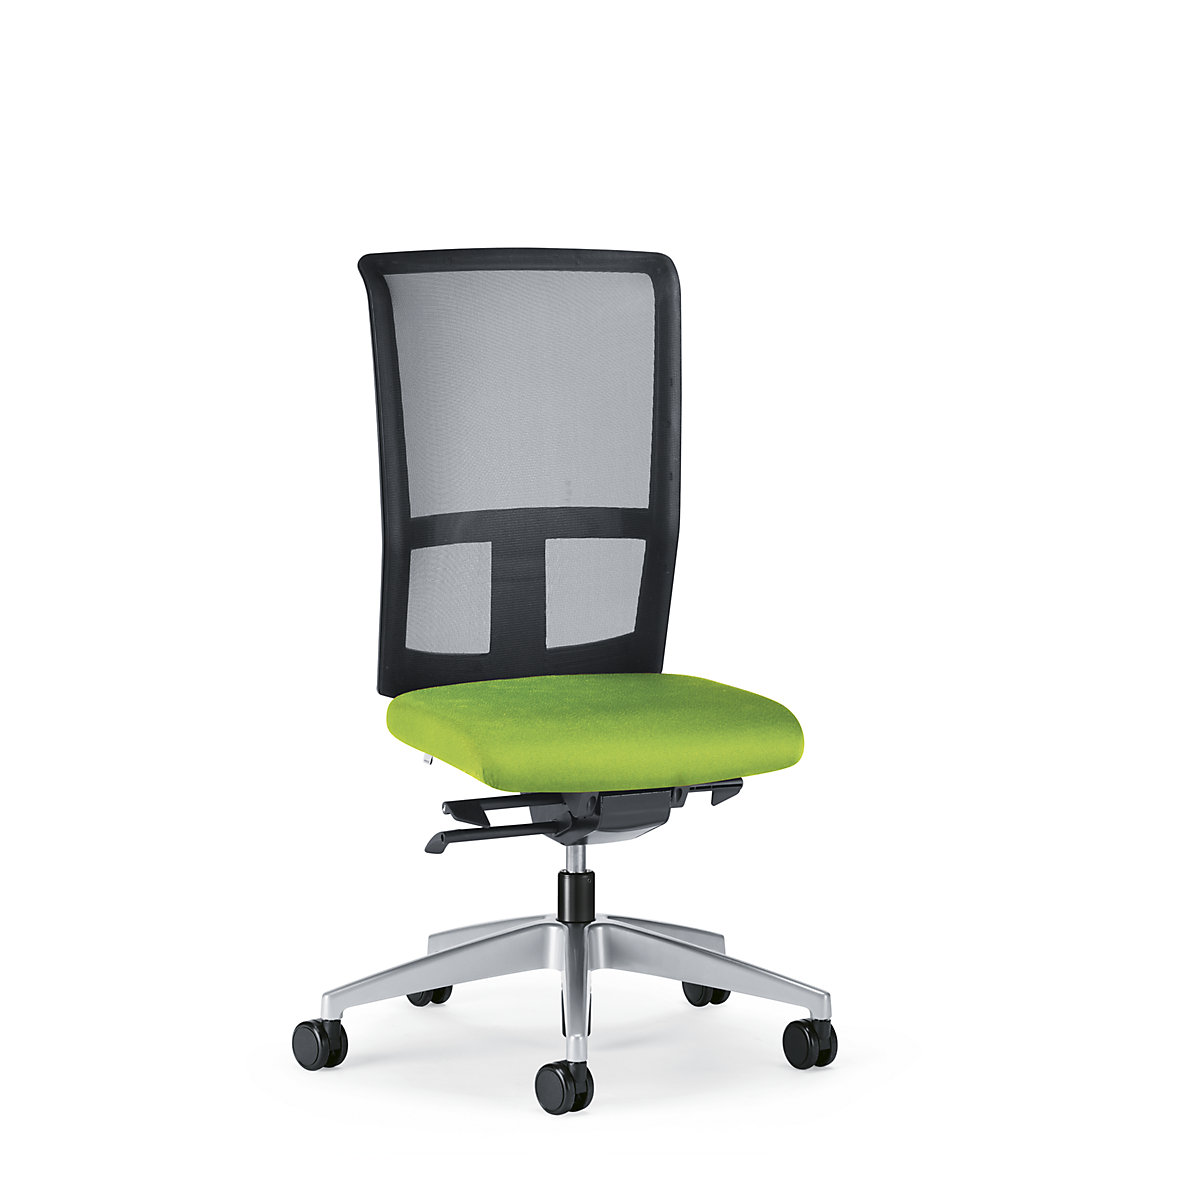 Obrotowe krzesło biurowe GOAL AIR, wys. oparcia 545 mm – interstuhl, szkielet brylantowo-srebrny, z miękkimi rolkami, żółto-zielony, głęb. siedziska 410 mm-1